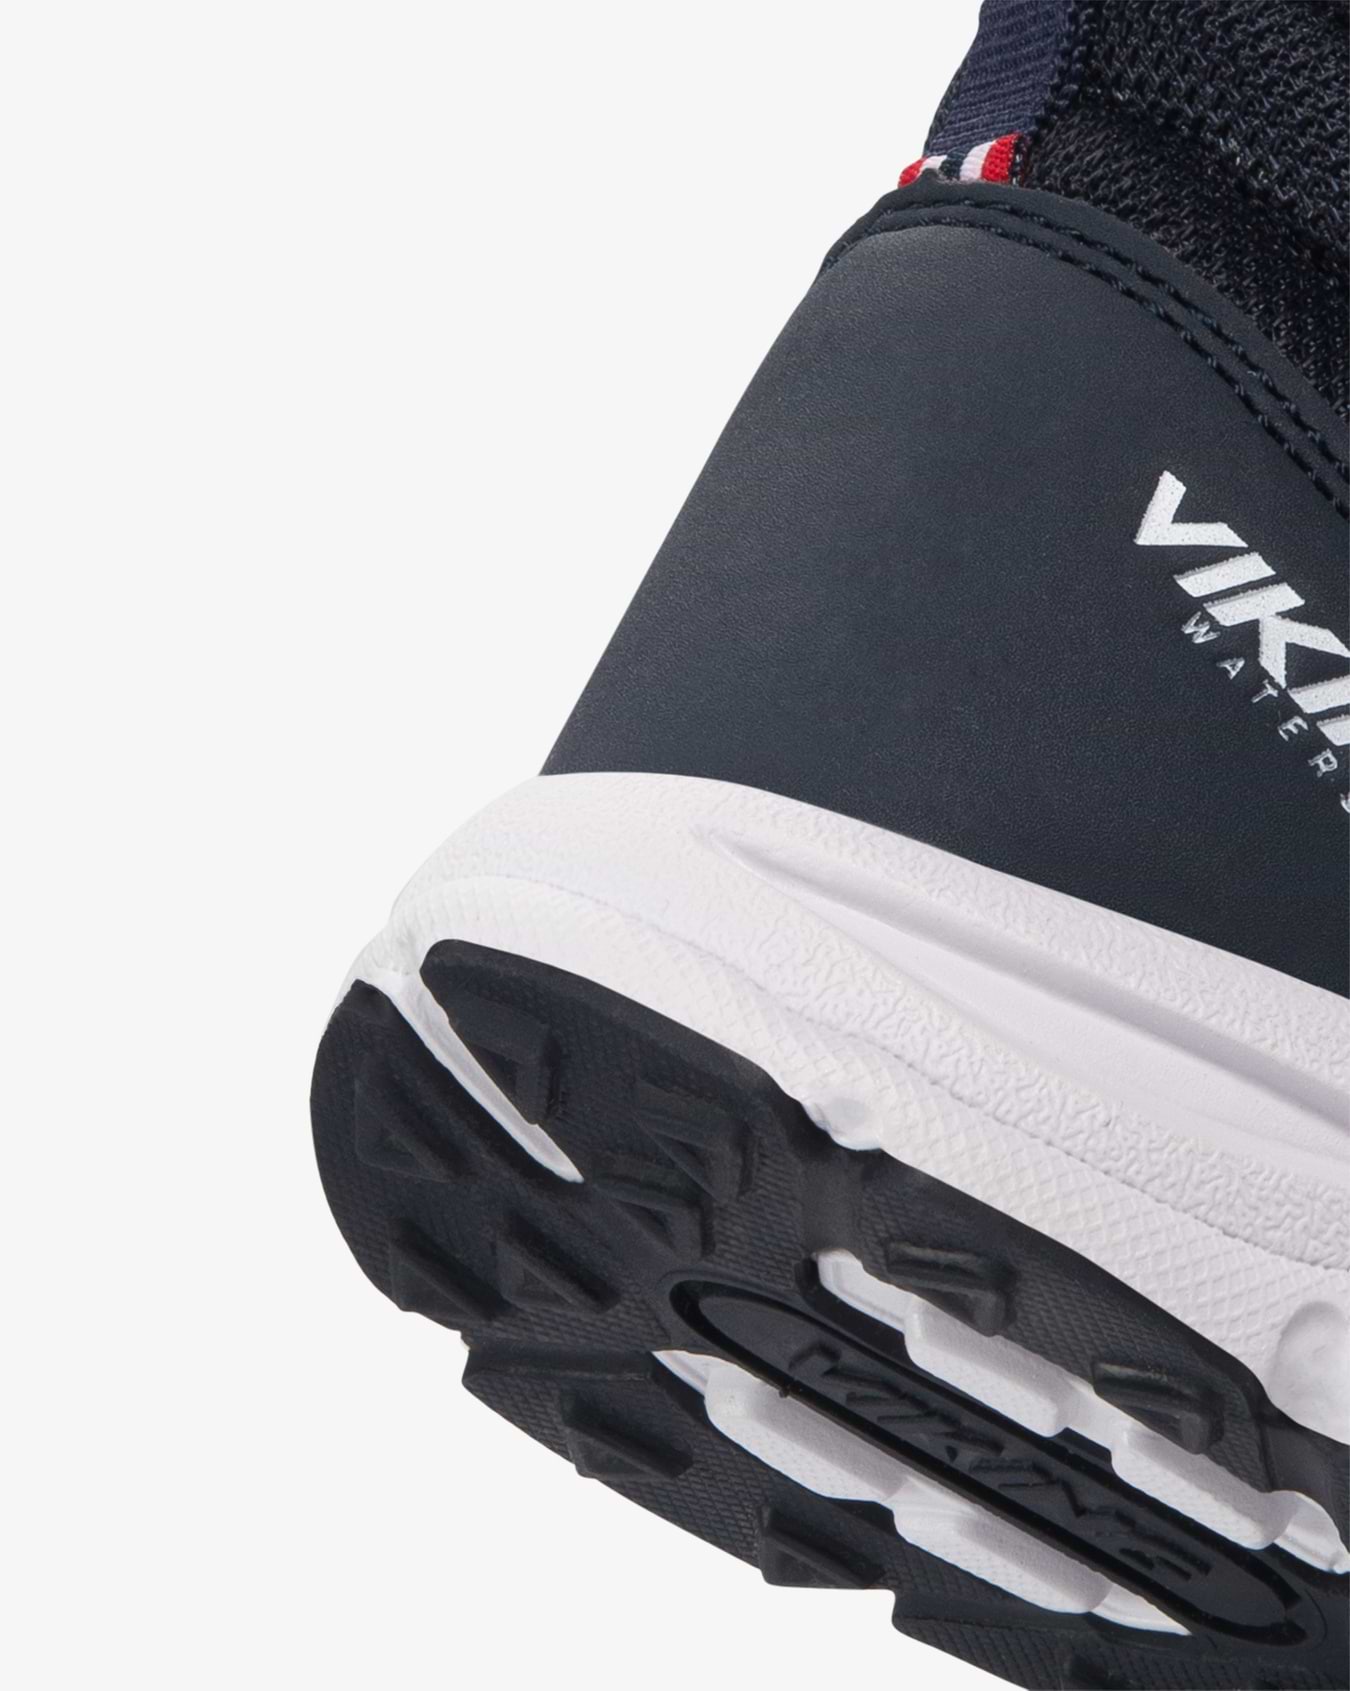 Viking Knapper Mid Kids Sneaker Blue Velcro